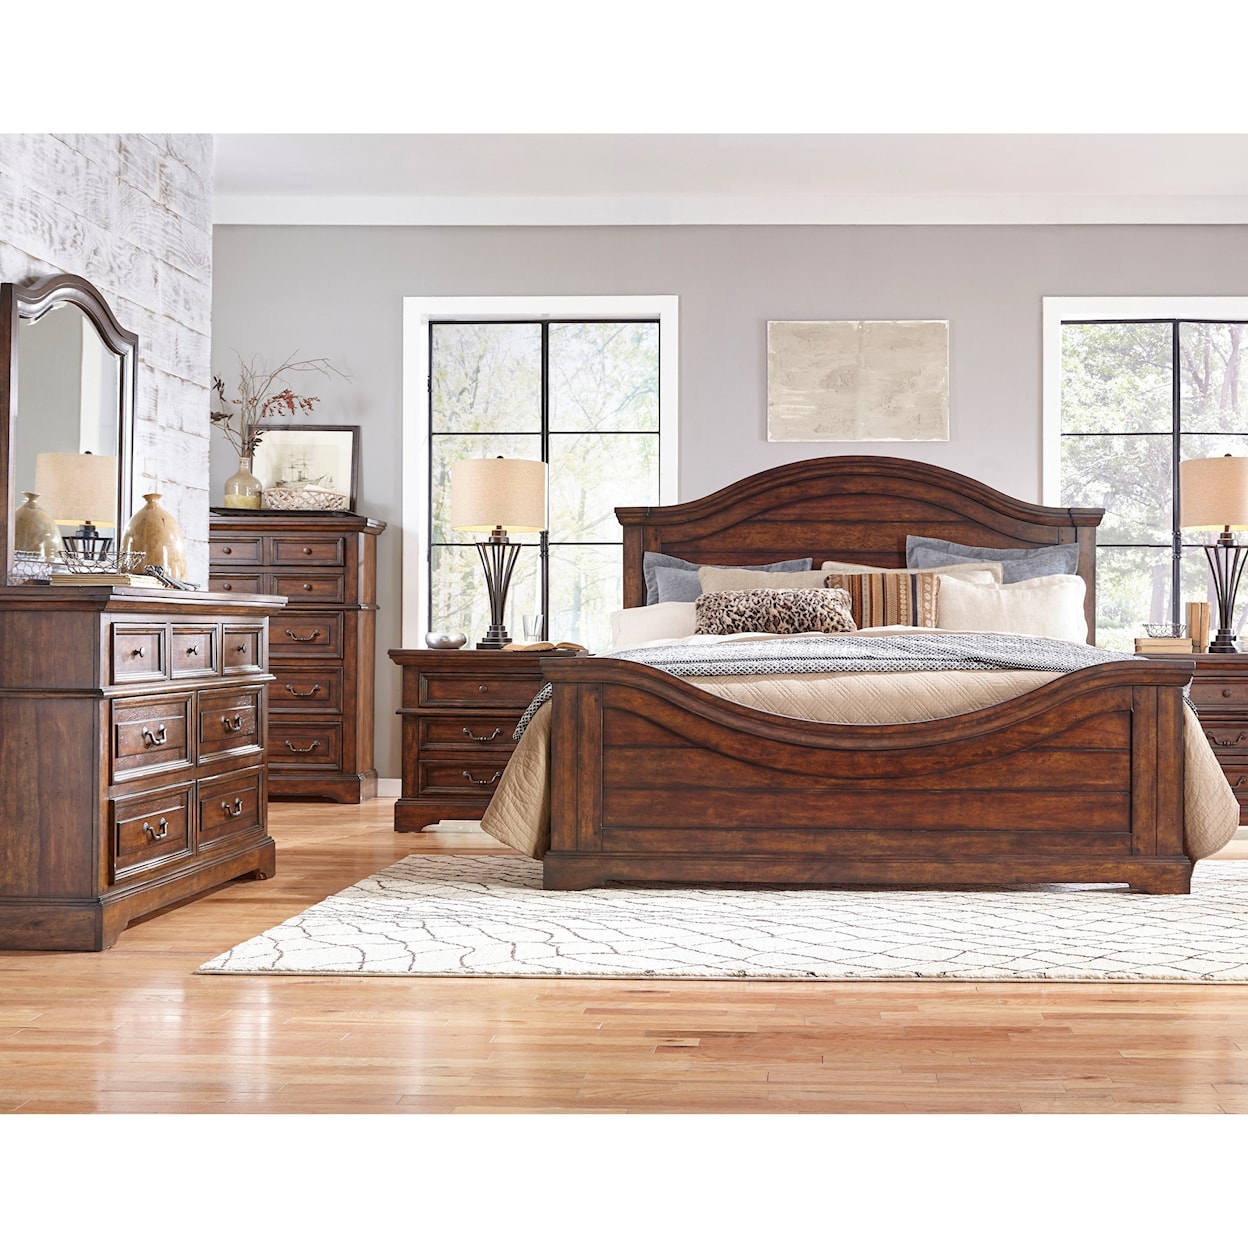 American Woodcrafters Stonebrook Queen Bedroom Group